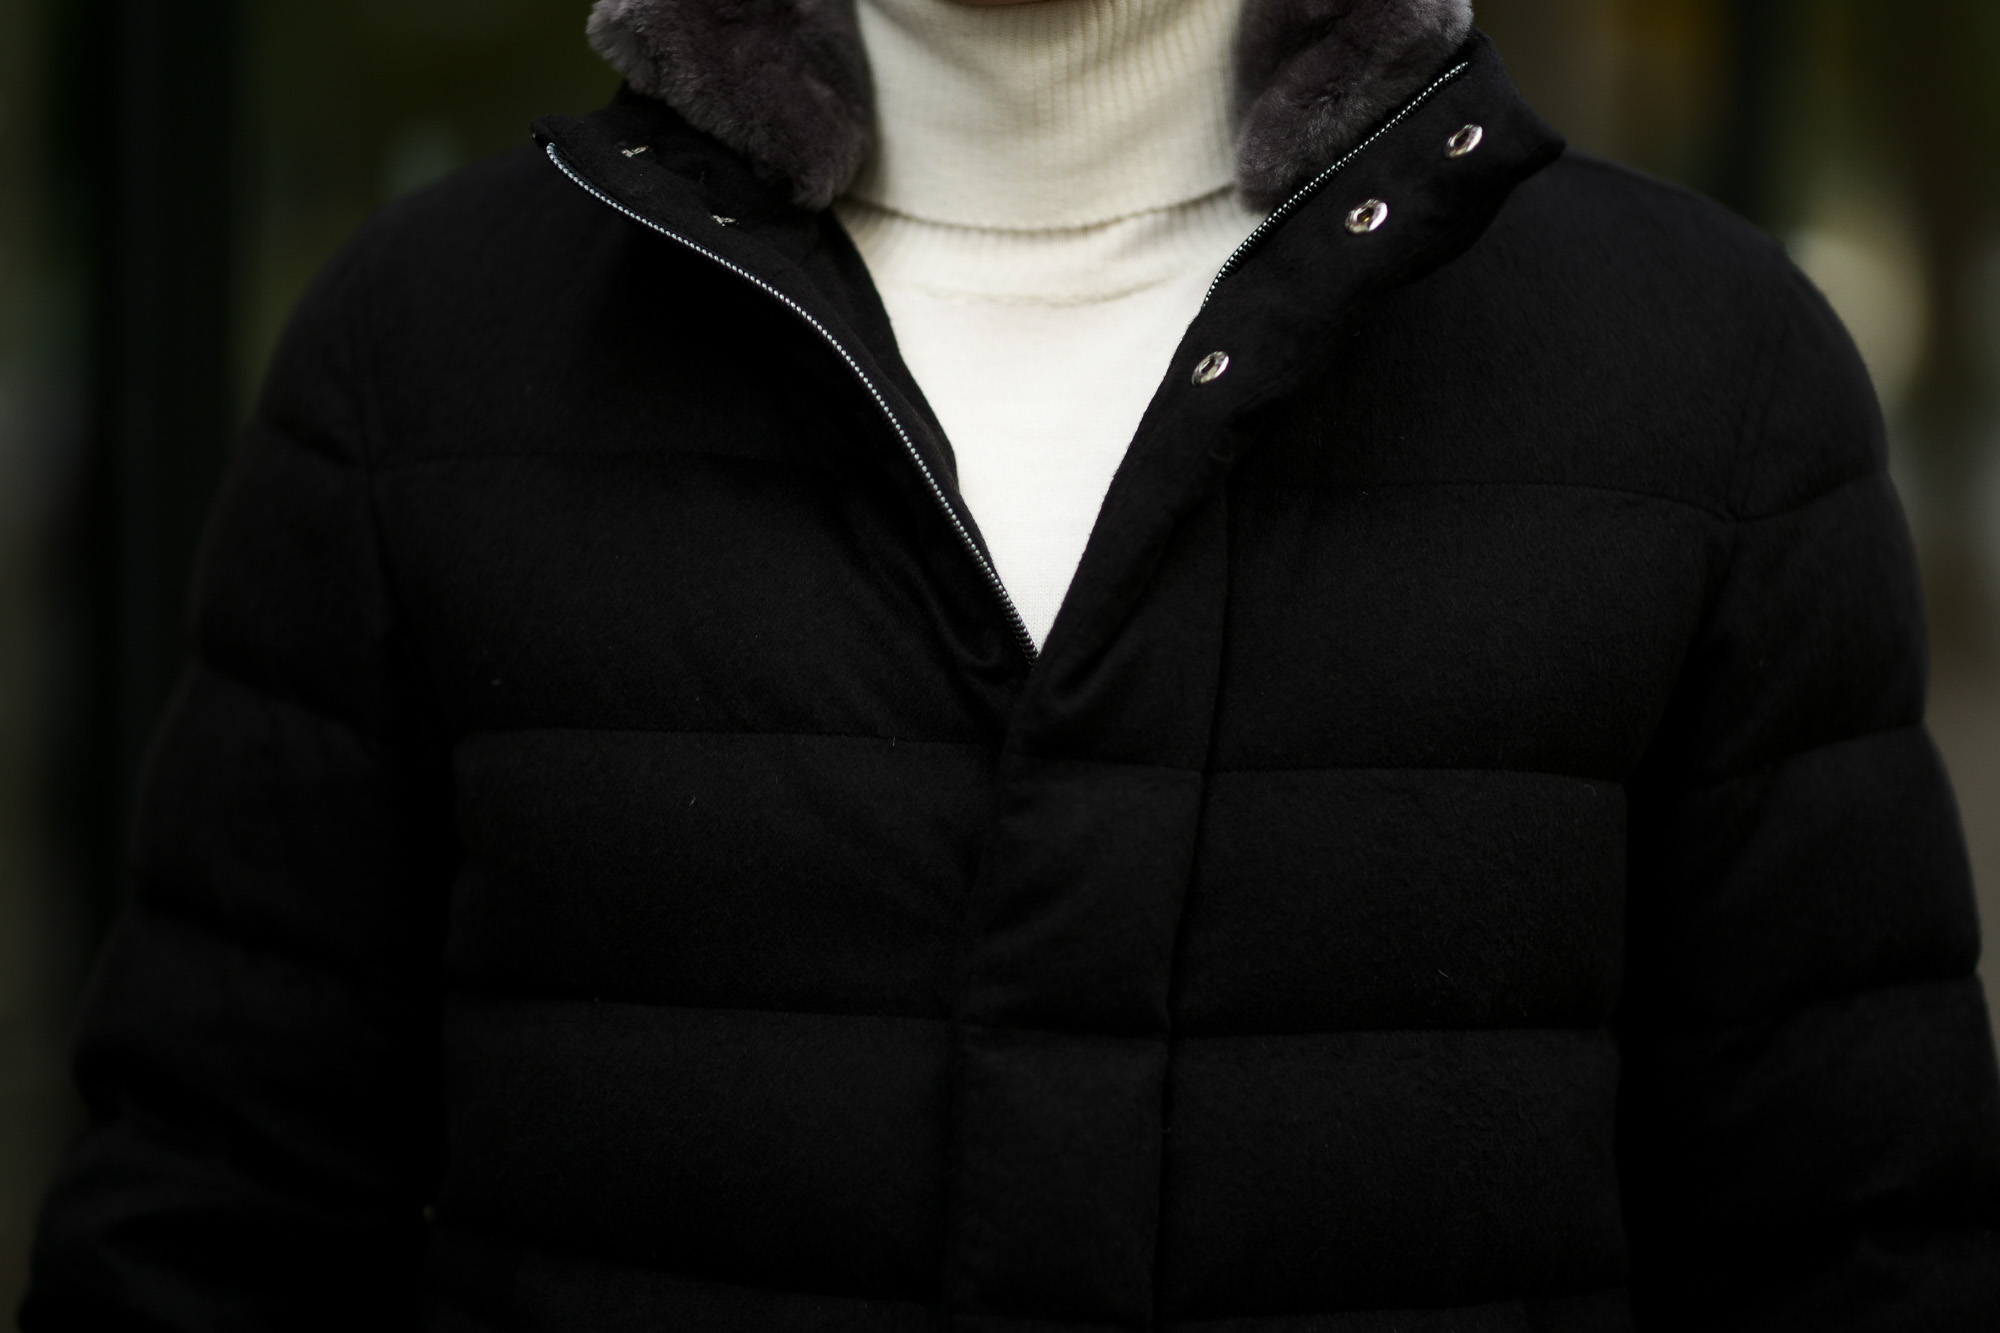 HERNO(ヘルノ) PI0584U Silk Cashmere Down coat (シルク カシミア ダウン コート) PIACENZA (ピアツェンツァ) DROP GLIDE NYLON ULTRALIGHT 撥水 シルク カシミア ダウン コート BLACK (ブラック・9300) Made in italy (イタリア製) 2019 秋冬新作 alto e dirittoアルトエデリット 42,44,46,48,50,52　愛知 名古屋